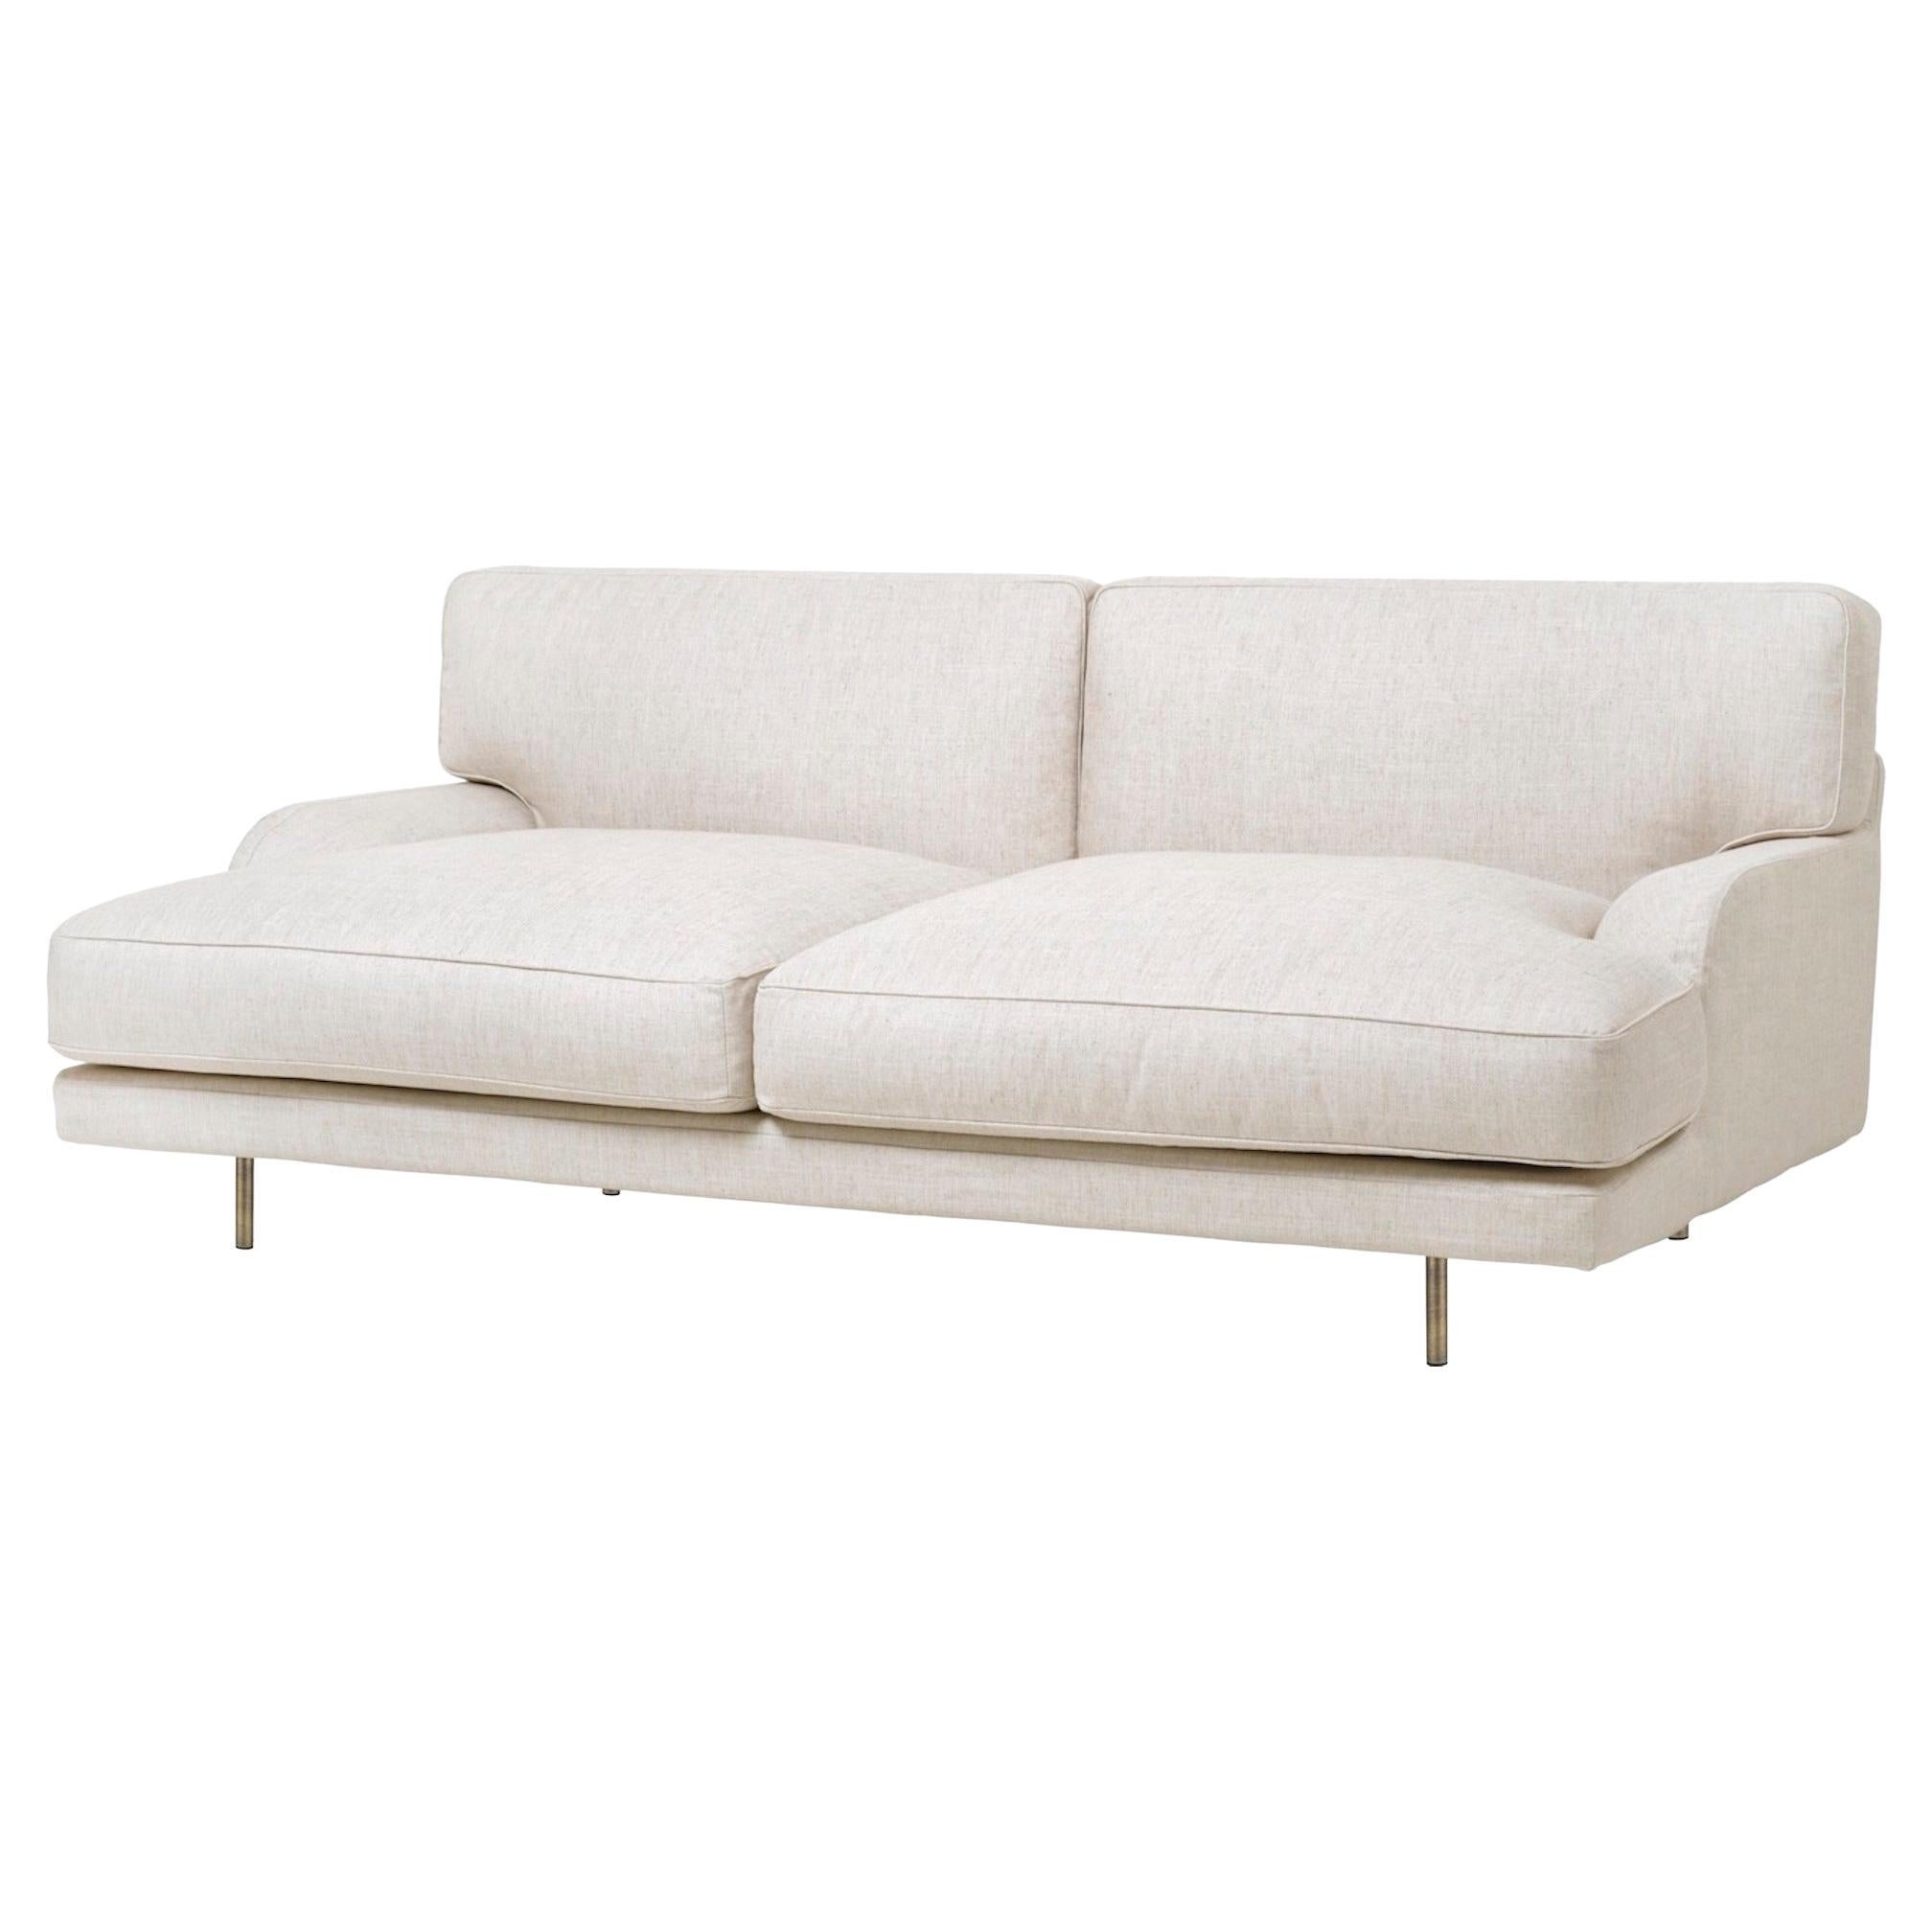 Customizable Gubi Flaneur Sofa Designed by Gamfratesi